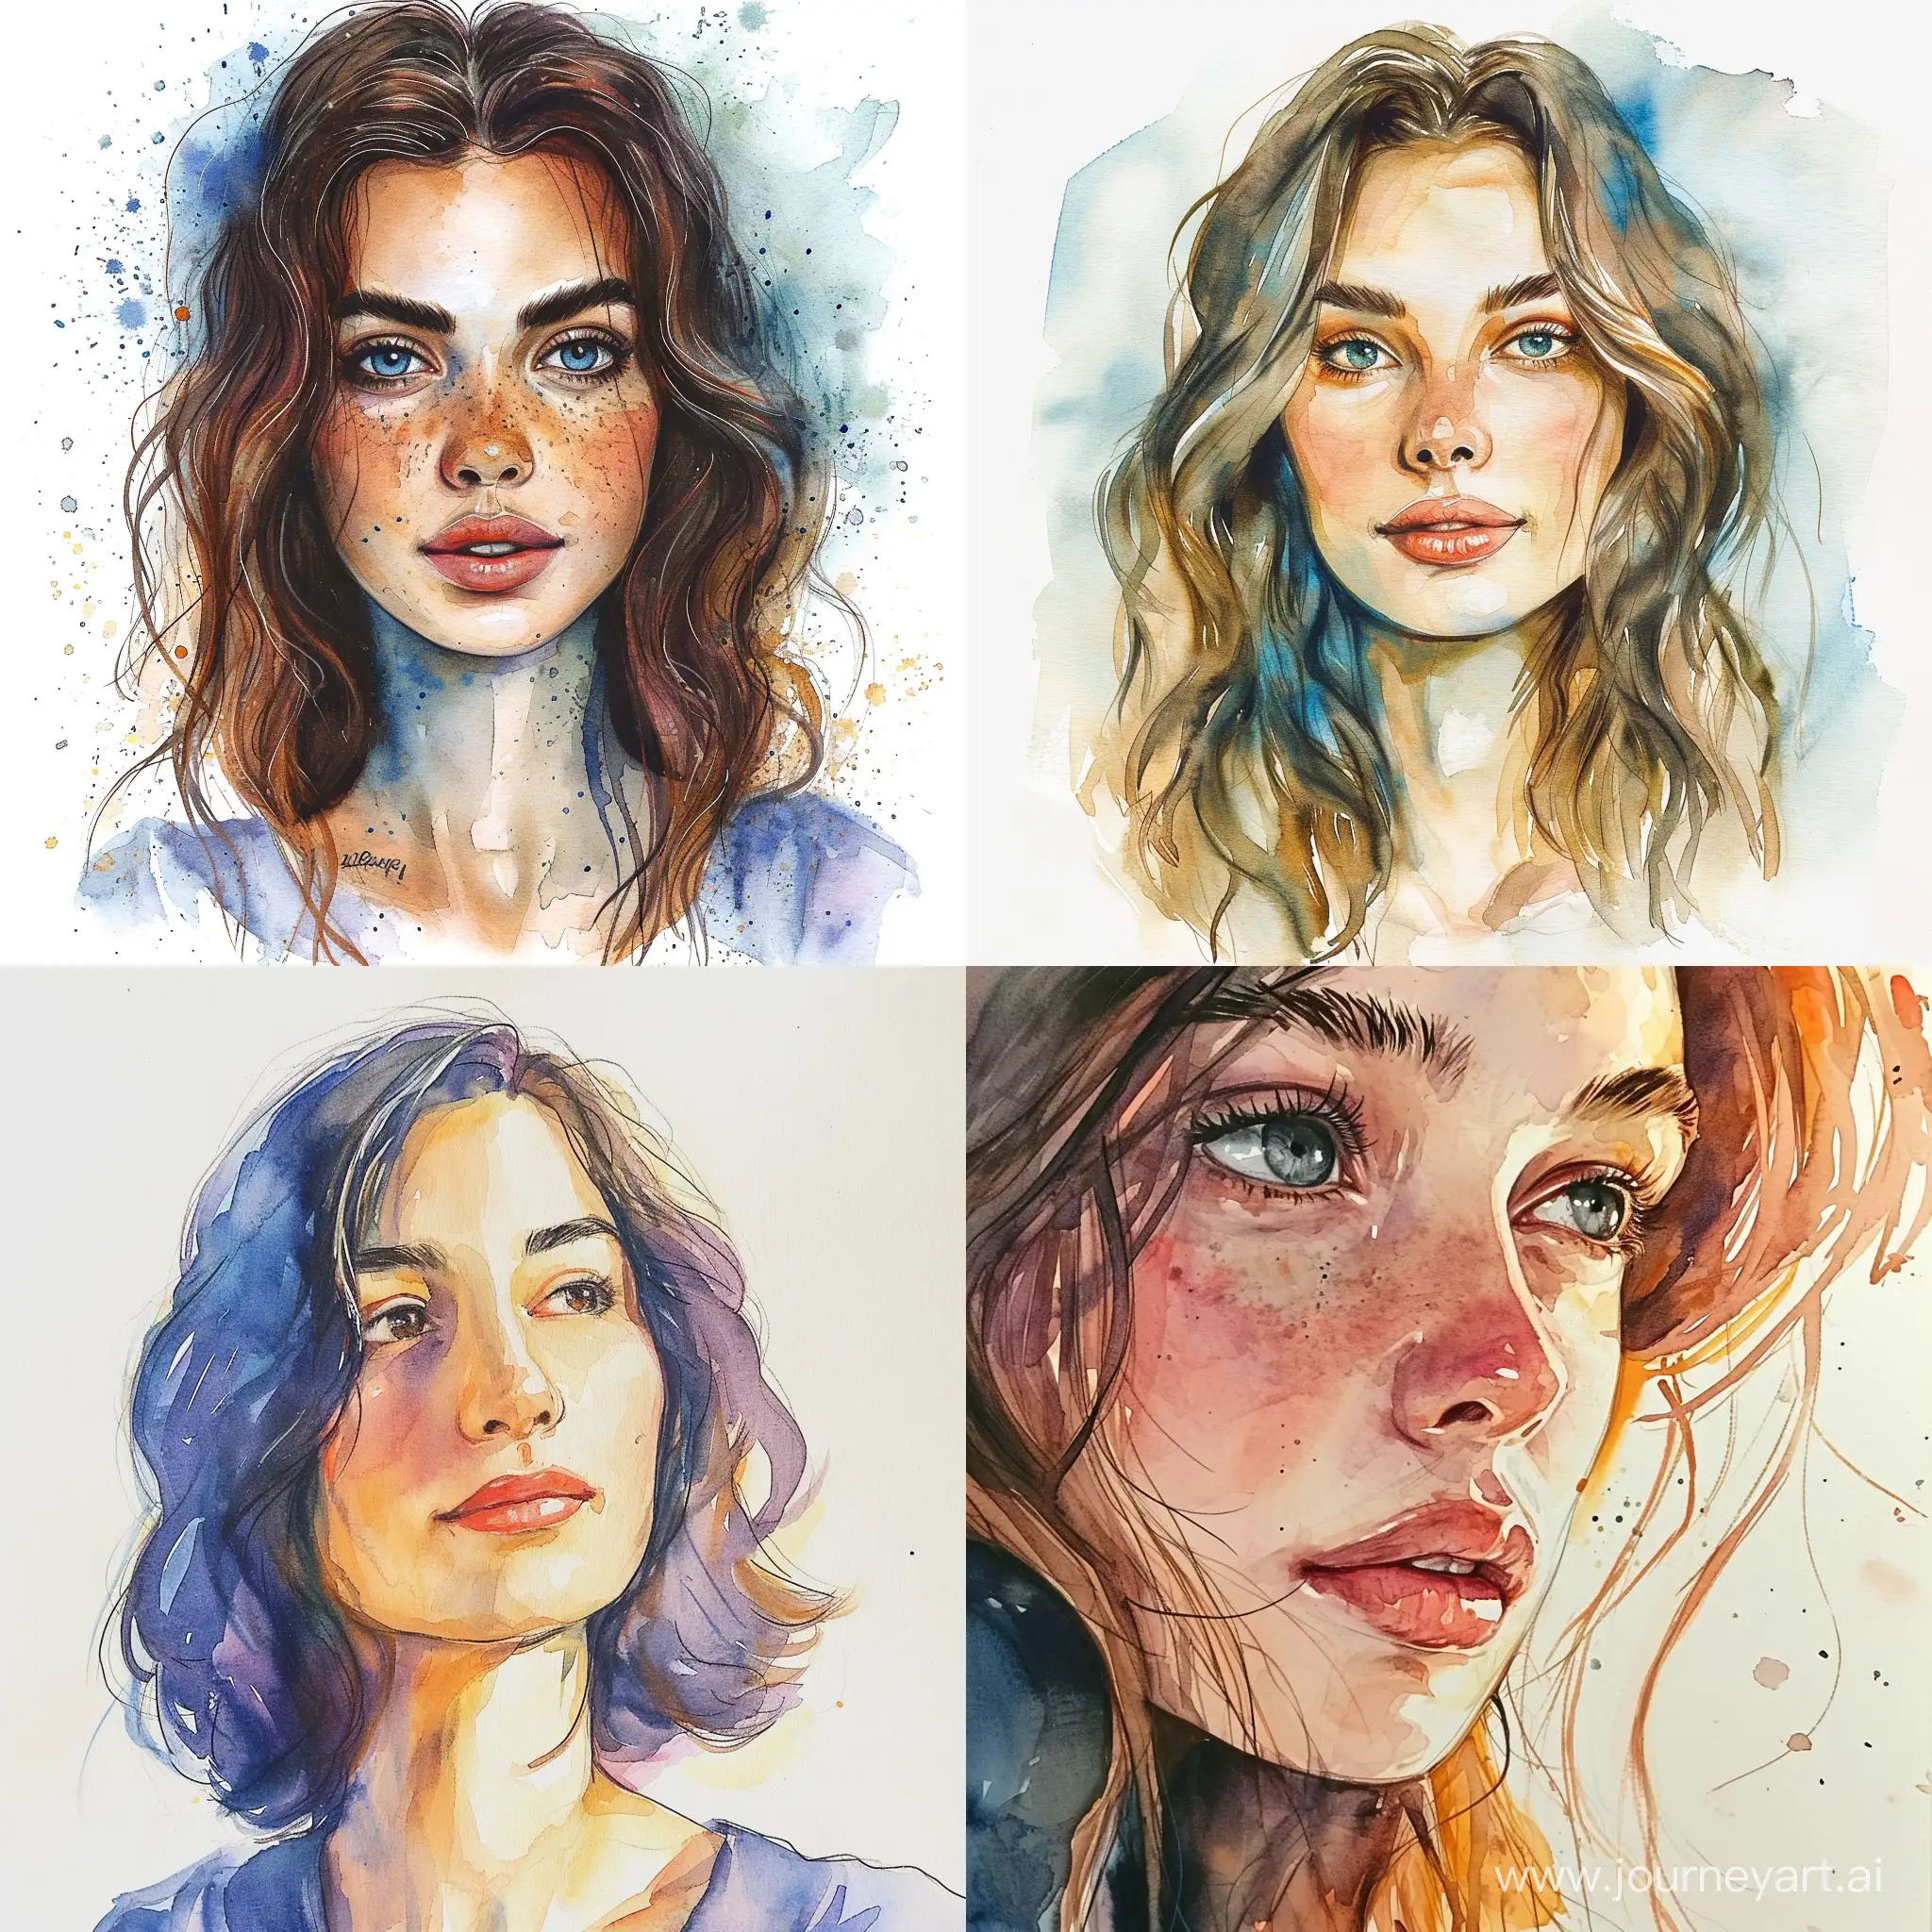 Watercolor-Portrait-with-Vibrant-Colors-and-Unique-Composition